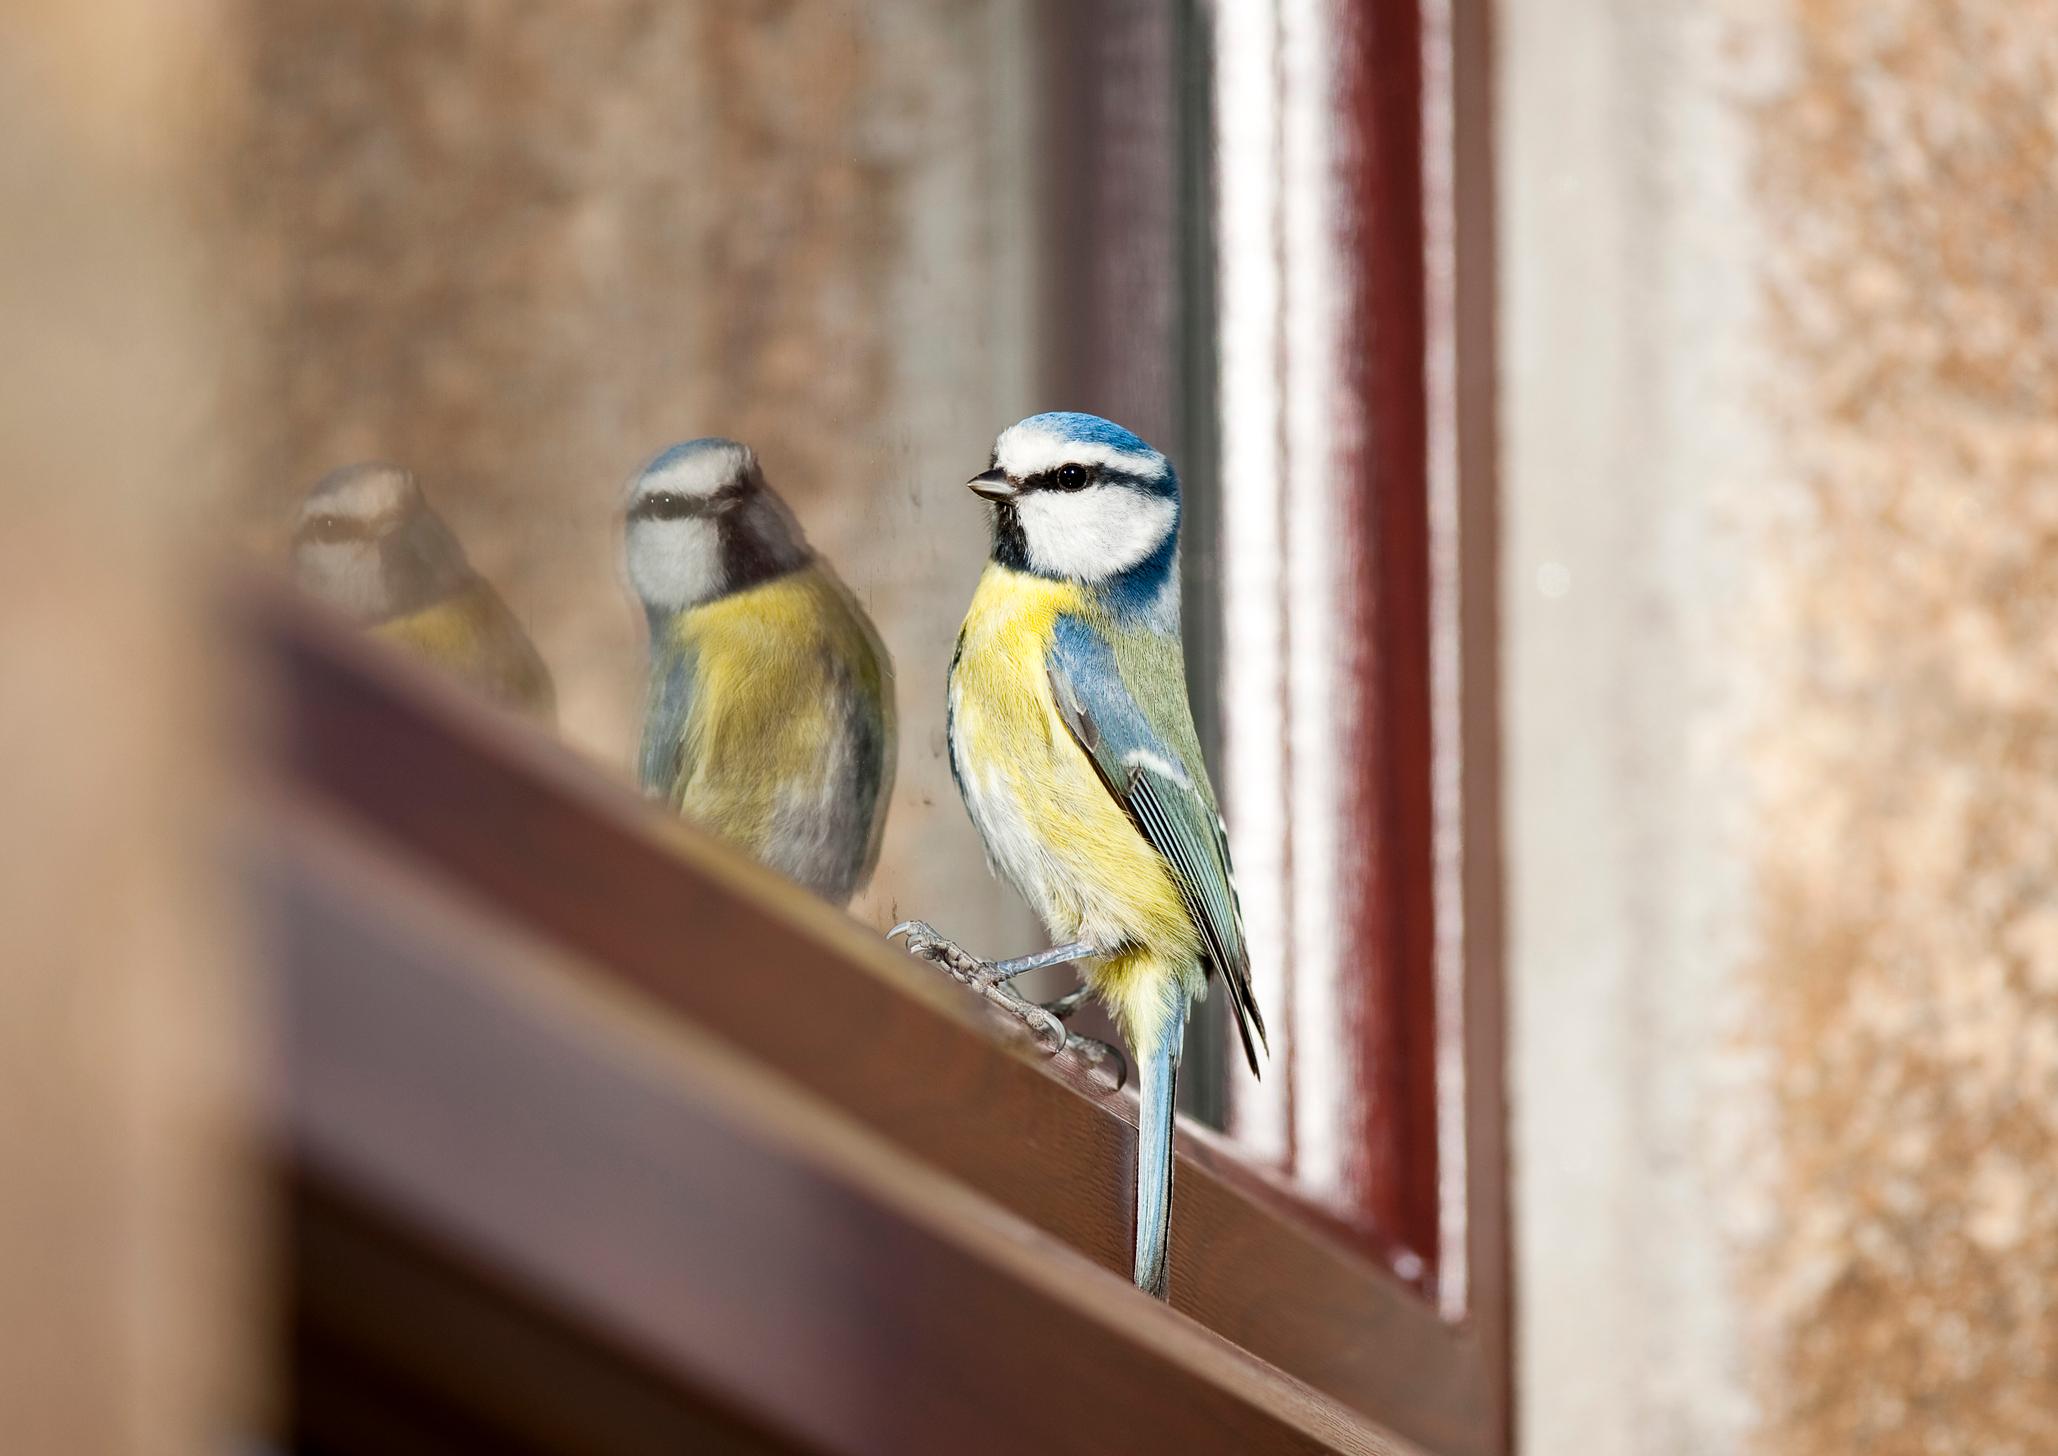  Ein grosses Problem für die Vögel sind die Glasflächen an Wohn- und Geschäftsbauten